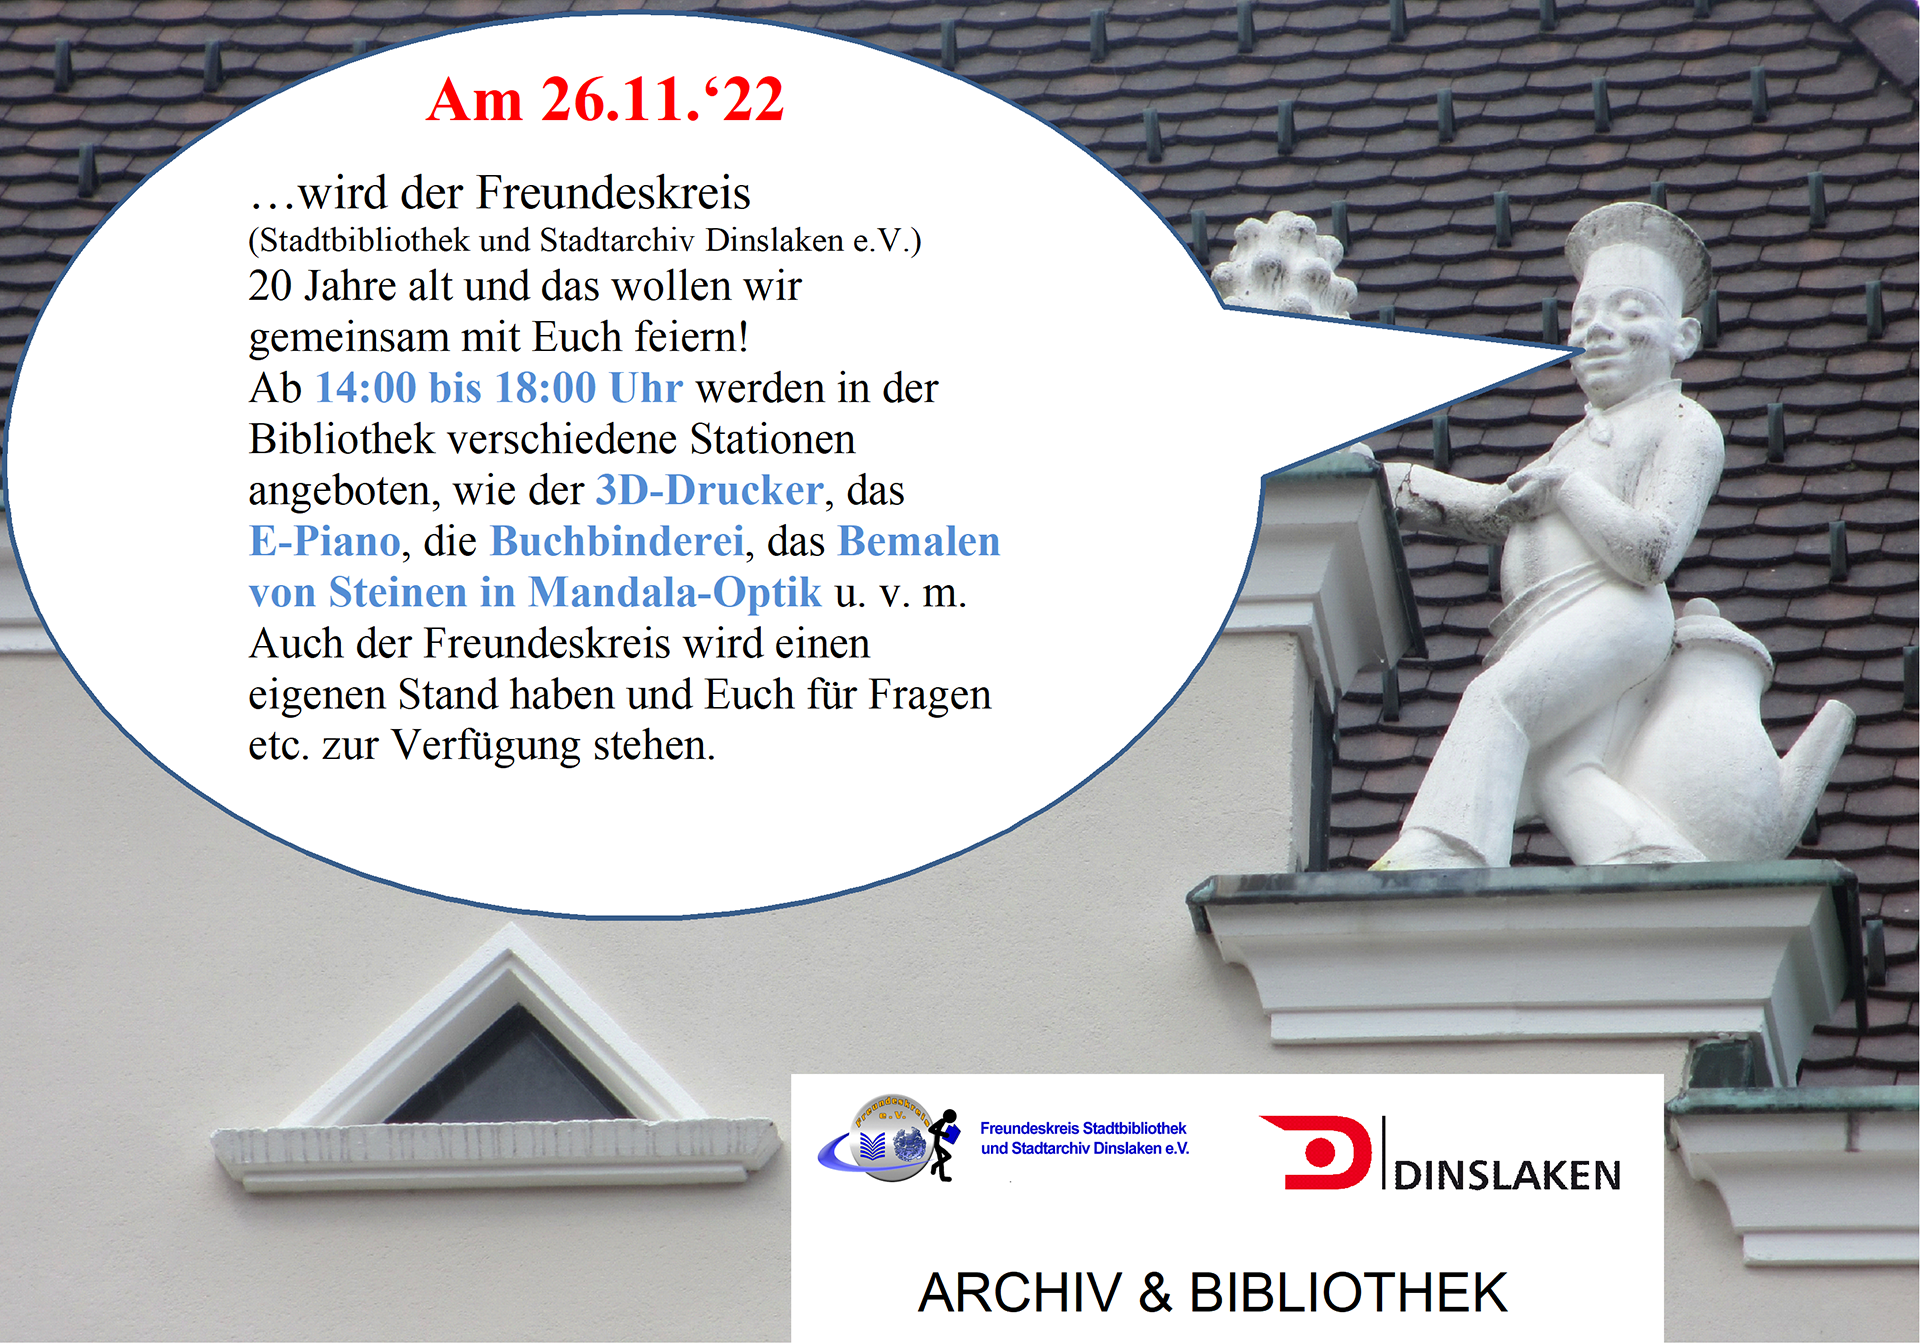 Der Freundeskreis der Stadtbibliothek und Stadtarchiv Dinslaken e.V. feiert am 26.11.2022 sein 20-jähriges Bestehen in der Stadtbibliothek Dinslaken